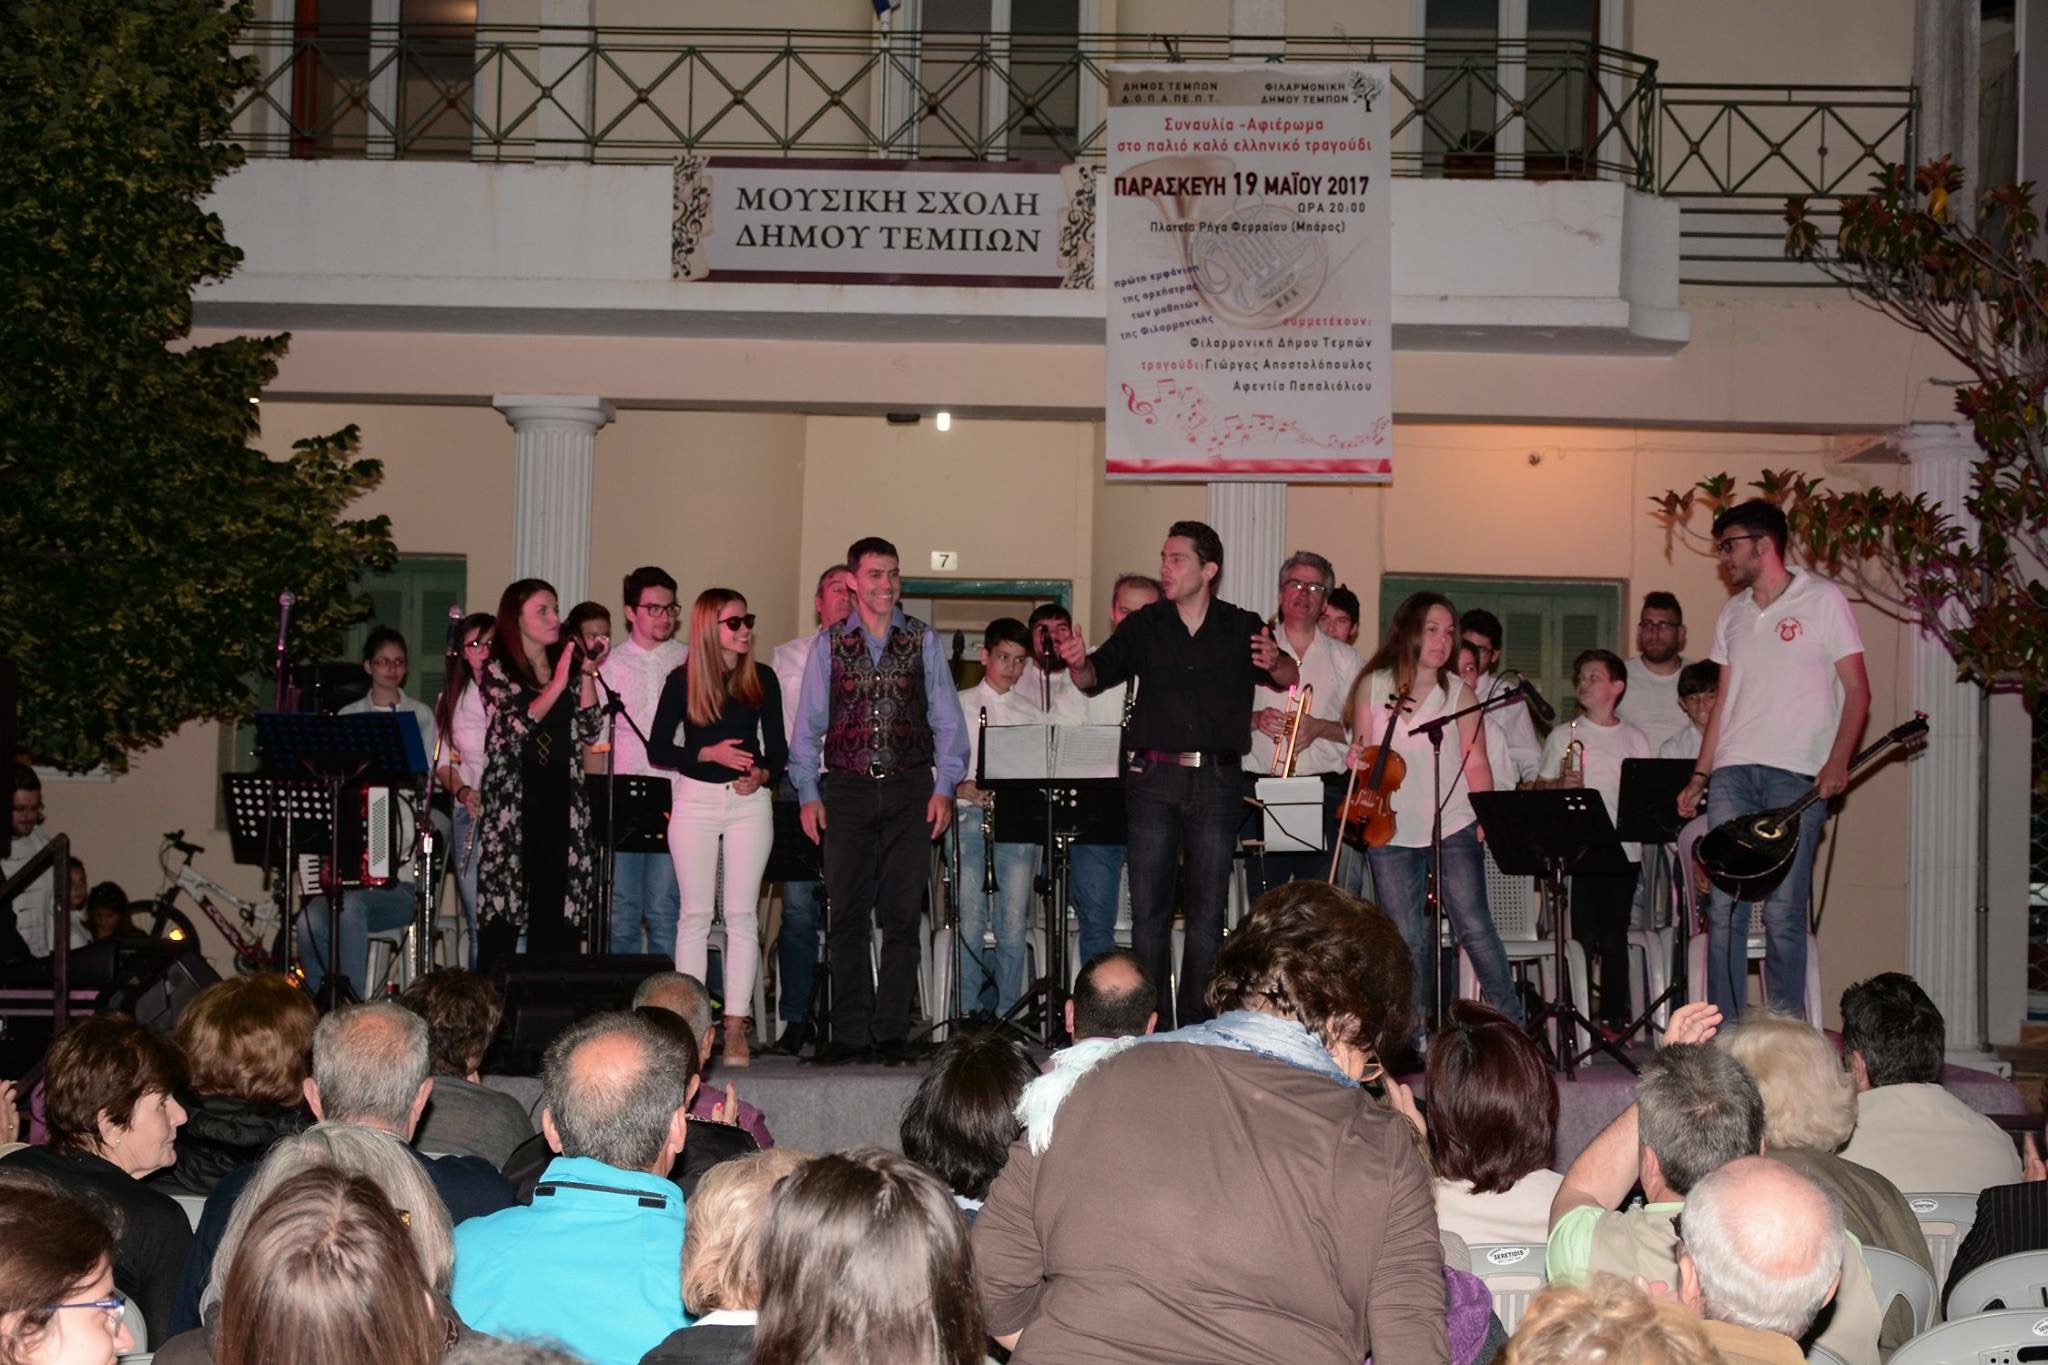 Μάγεψε η φιλαρμονική του Δήμου Τεμπών στις εορταστικές εκδηλώσεις Κωνσταντίνεια 2017